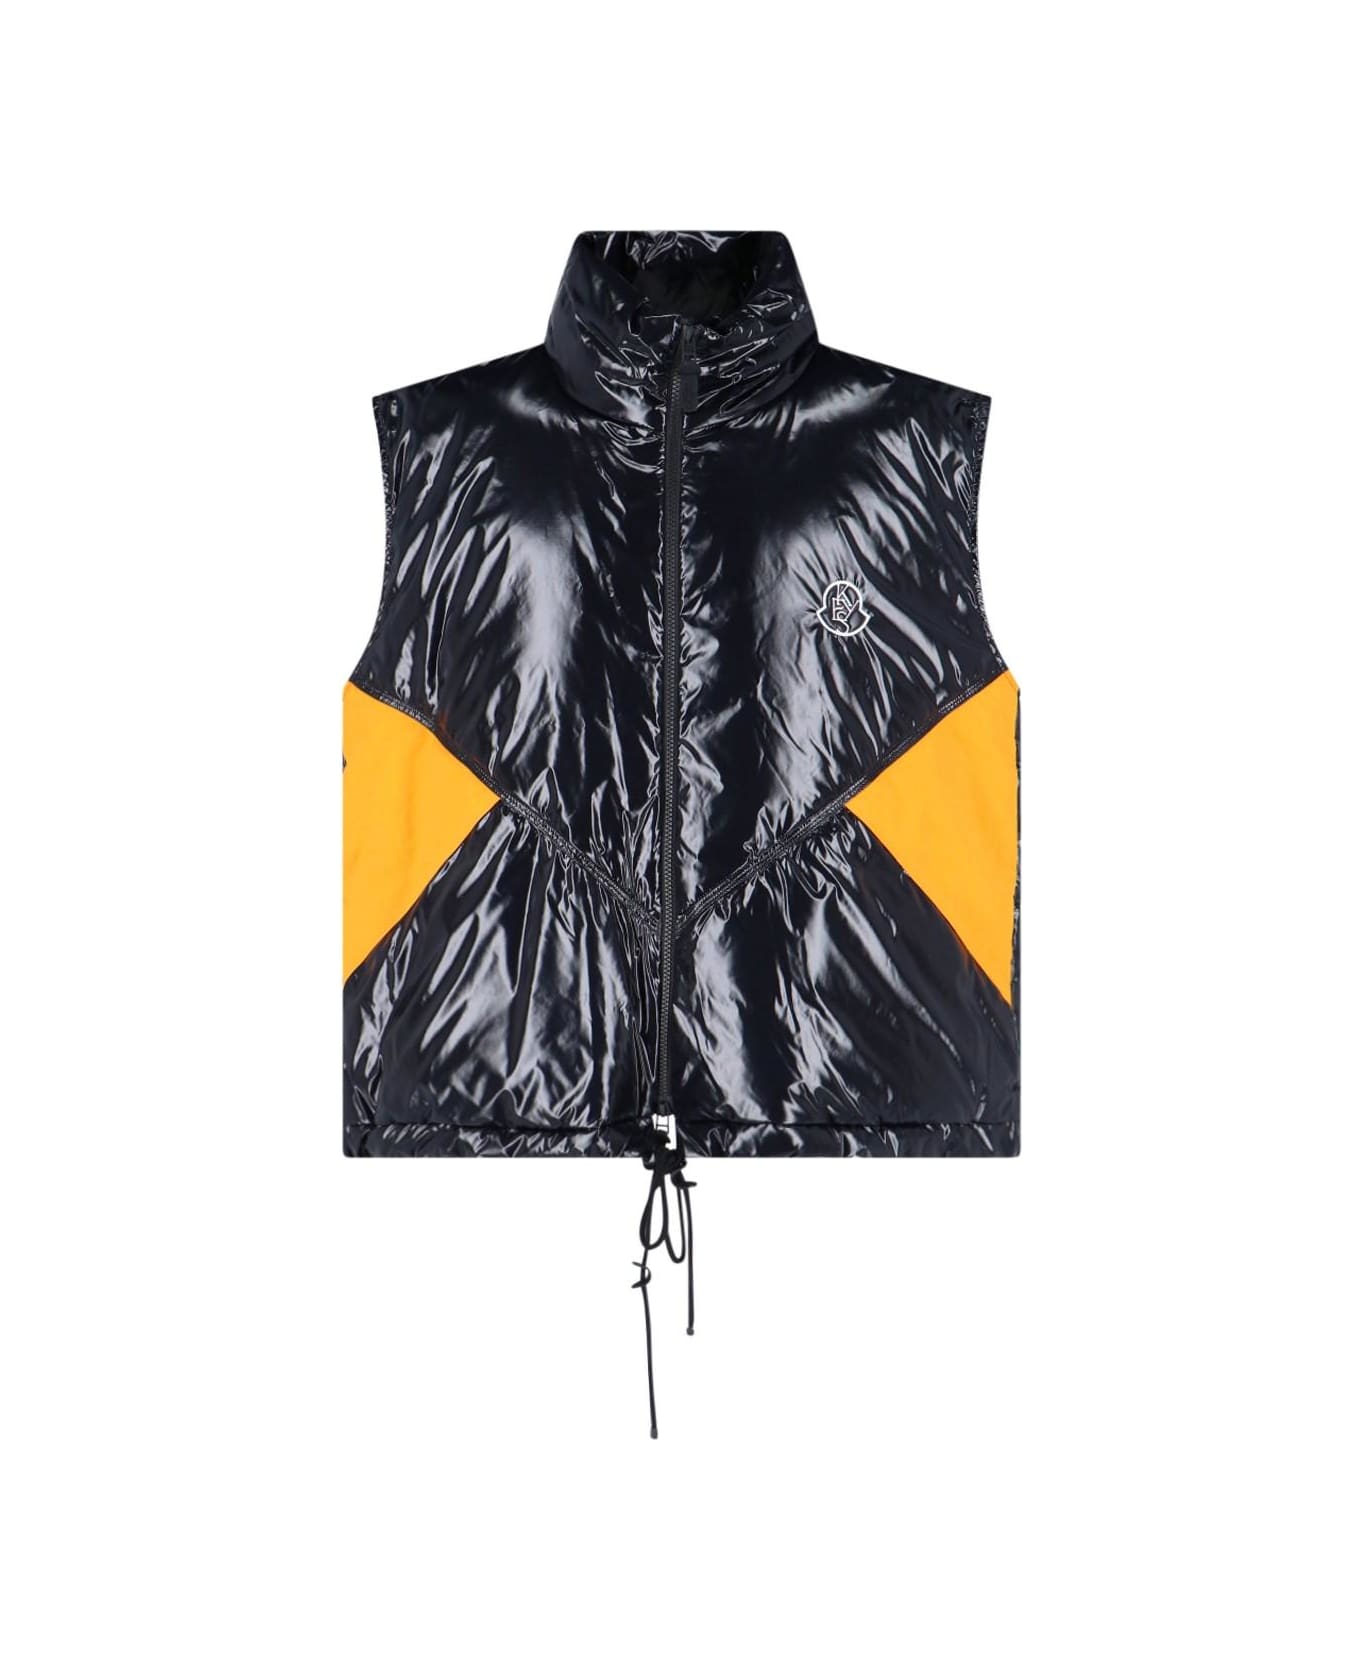 Moncler X Alicia Keys 'chelsea' Puffer Vest - Black